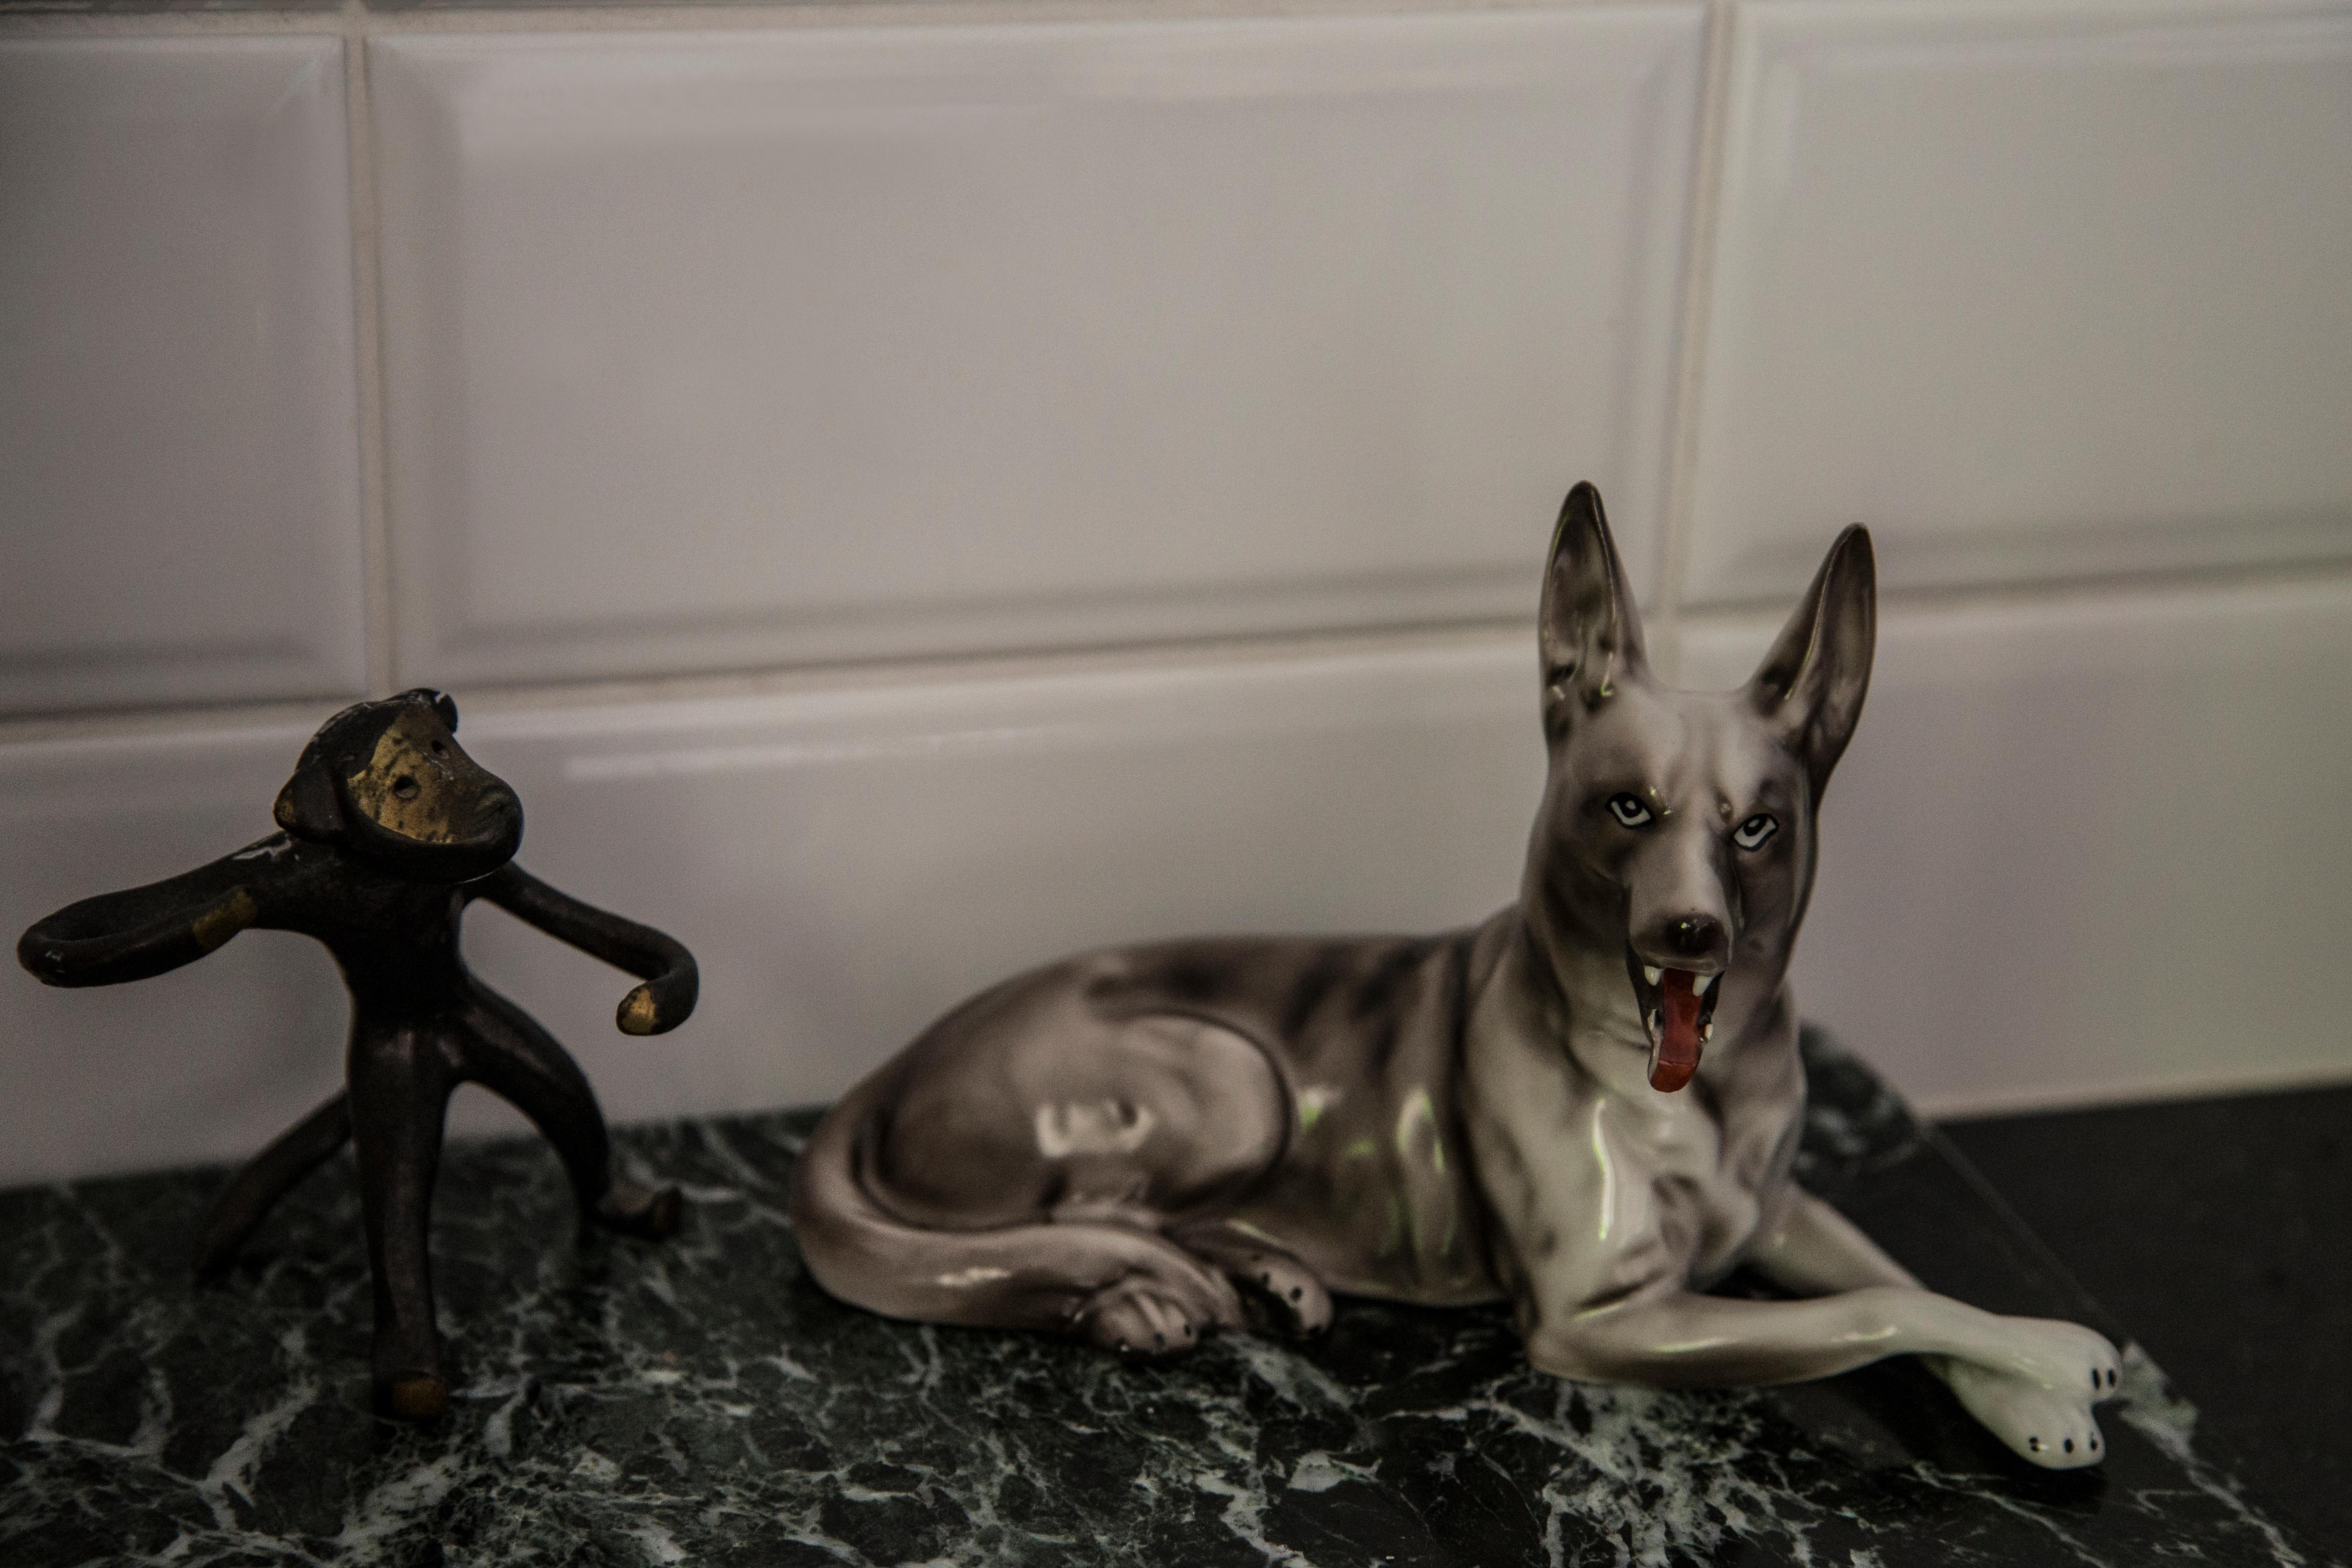 Bemalte Keramik, sehr guter originaler Vintage-Zustand. Keine Schäden oder Risse. Schöne und einzigartige dekorative Skulptur. Gray Shepherd Dog Sculpture wurde in England hergestellt. Nur ein Hund verfügbar.